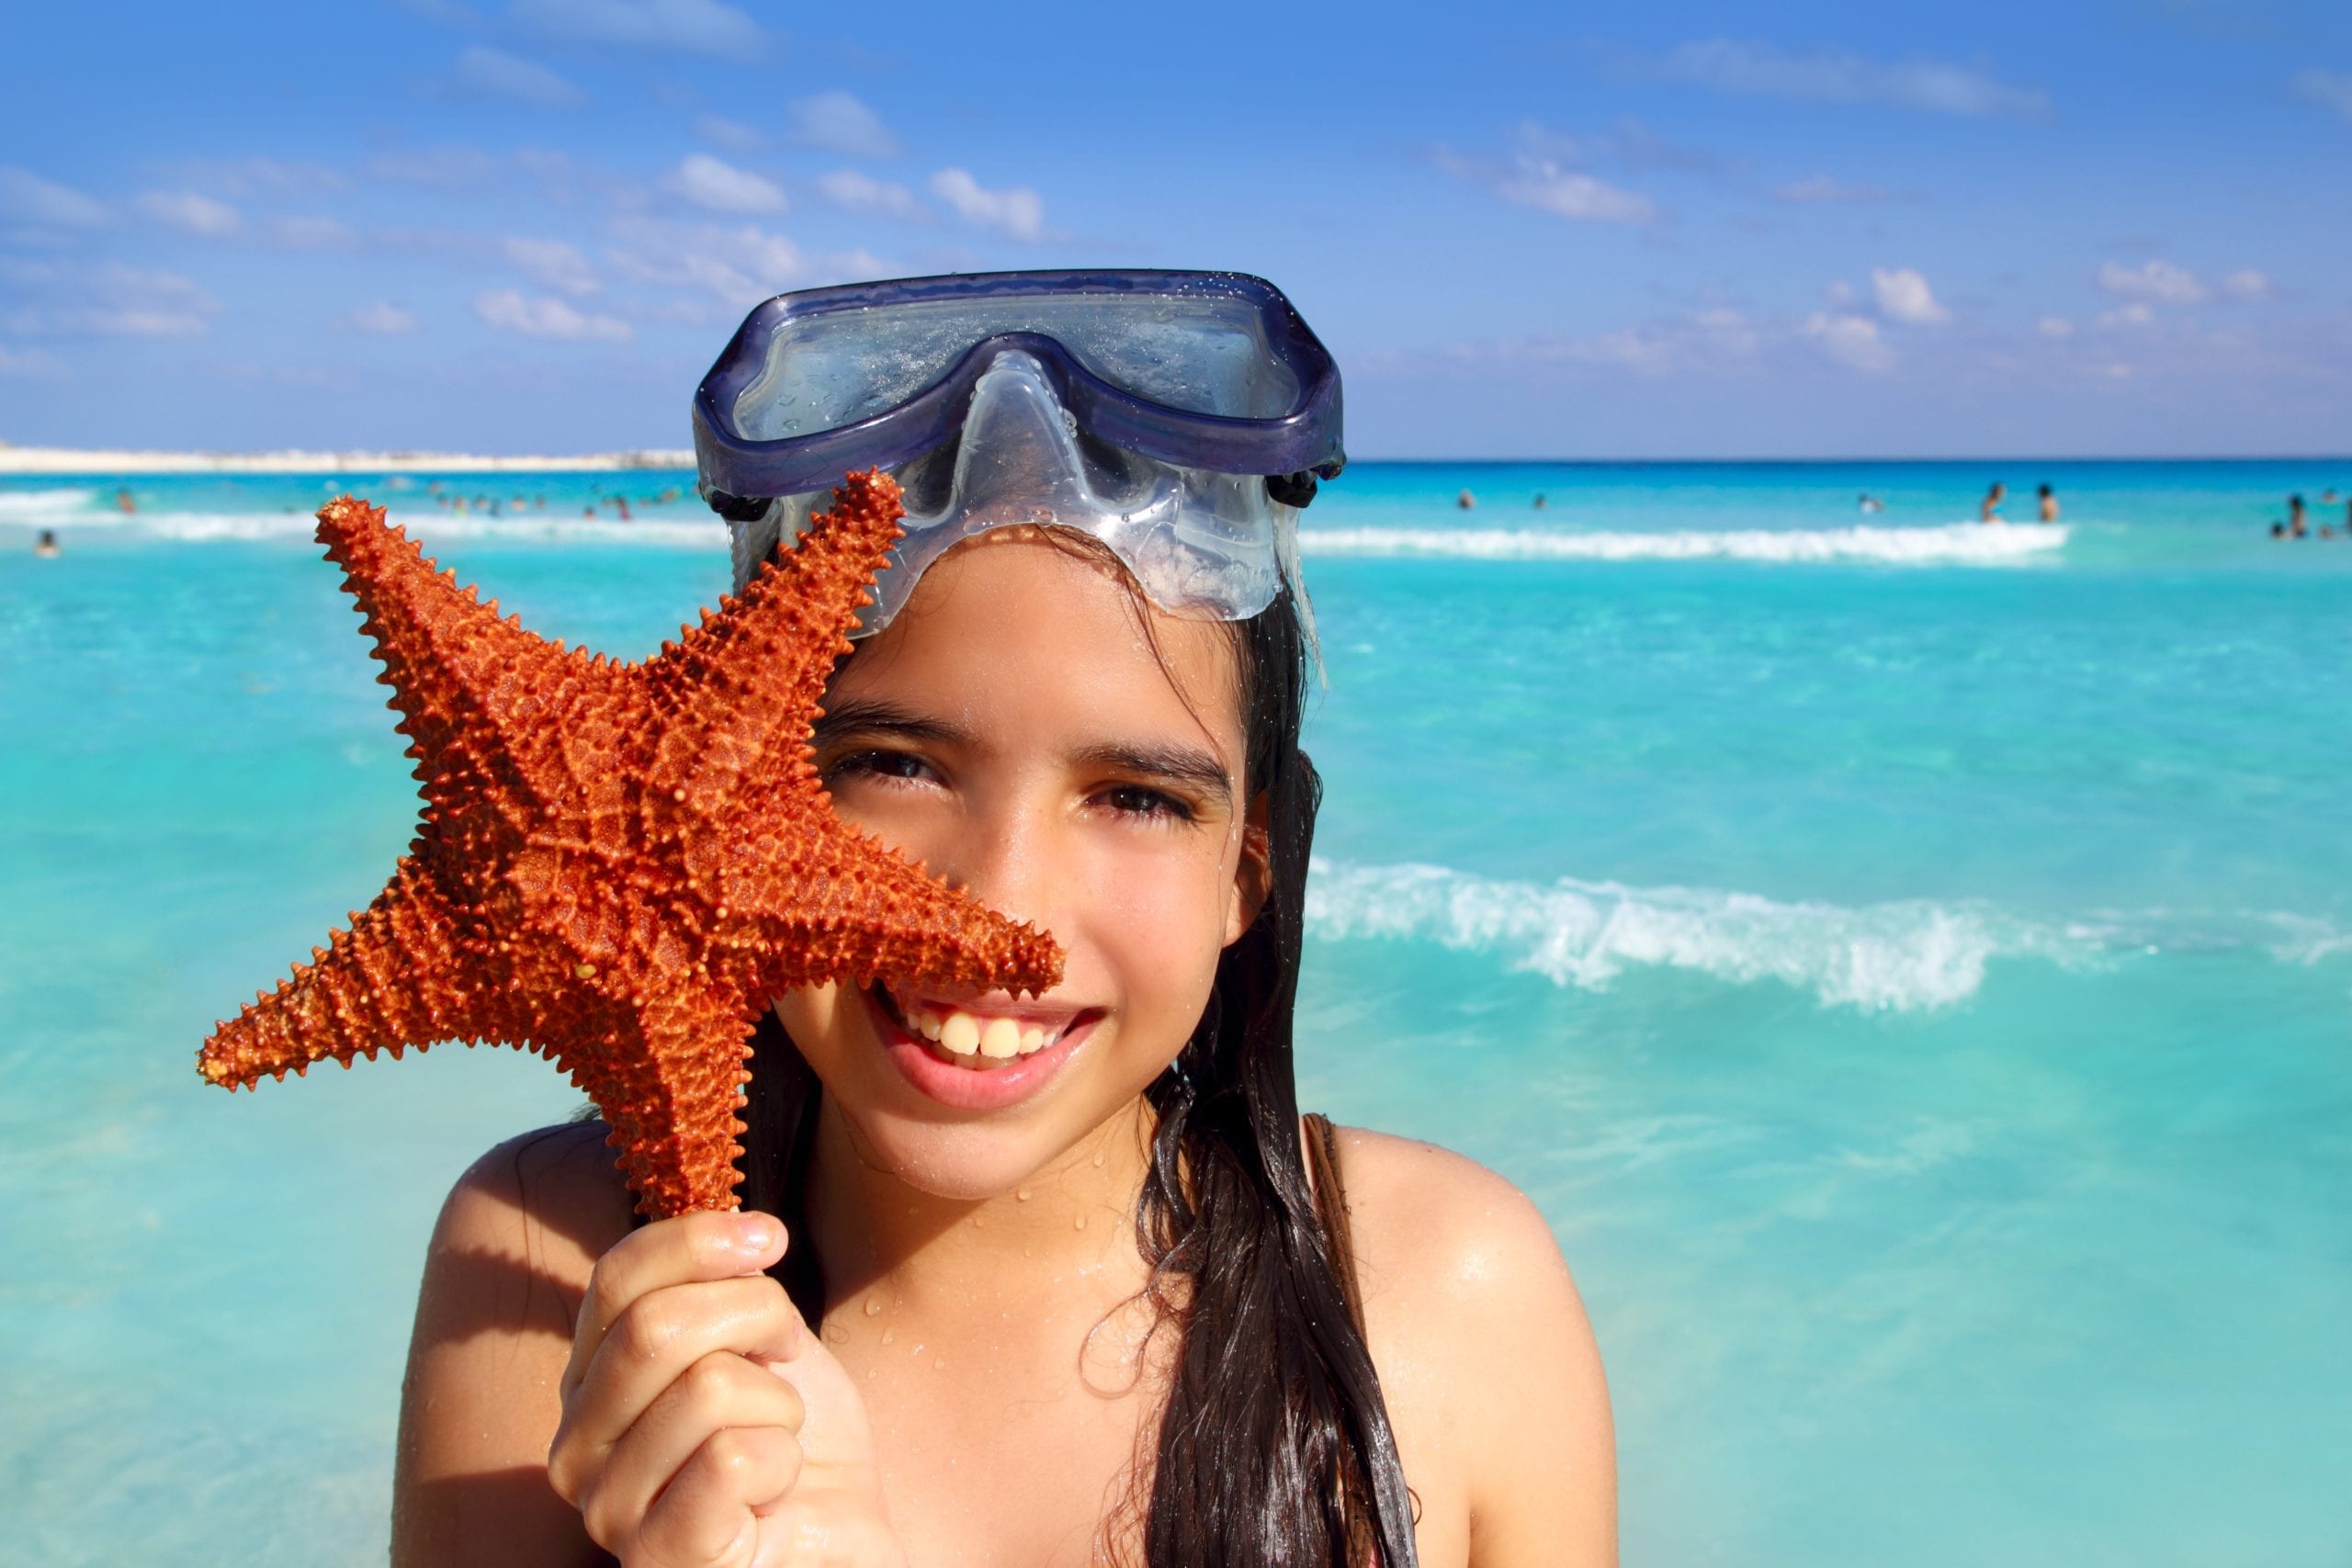 Girl with starfish (Photo: Shutterstock)